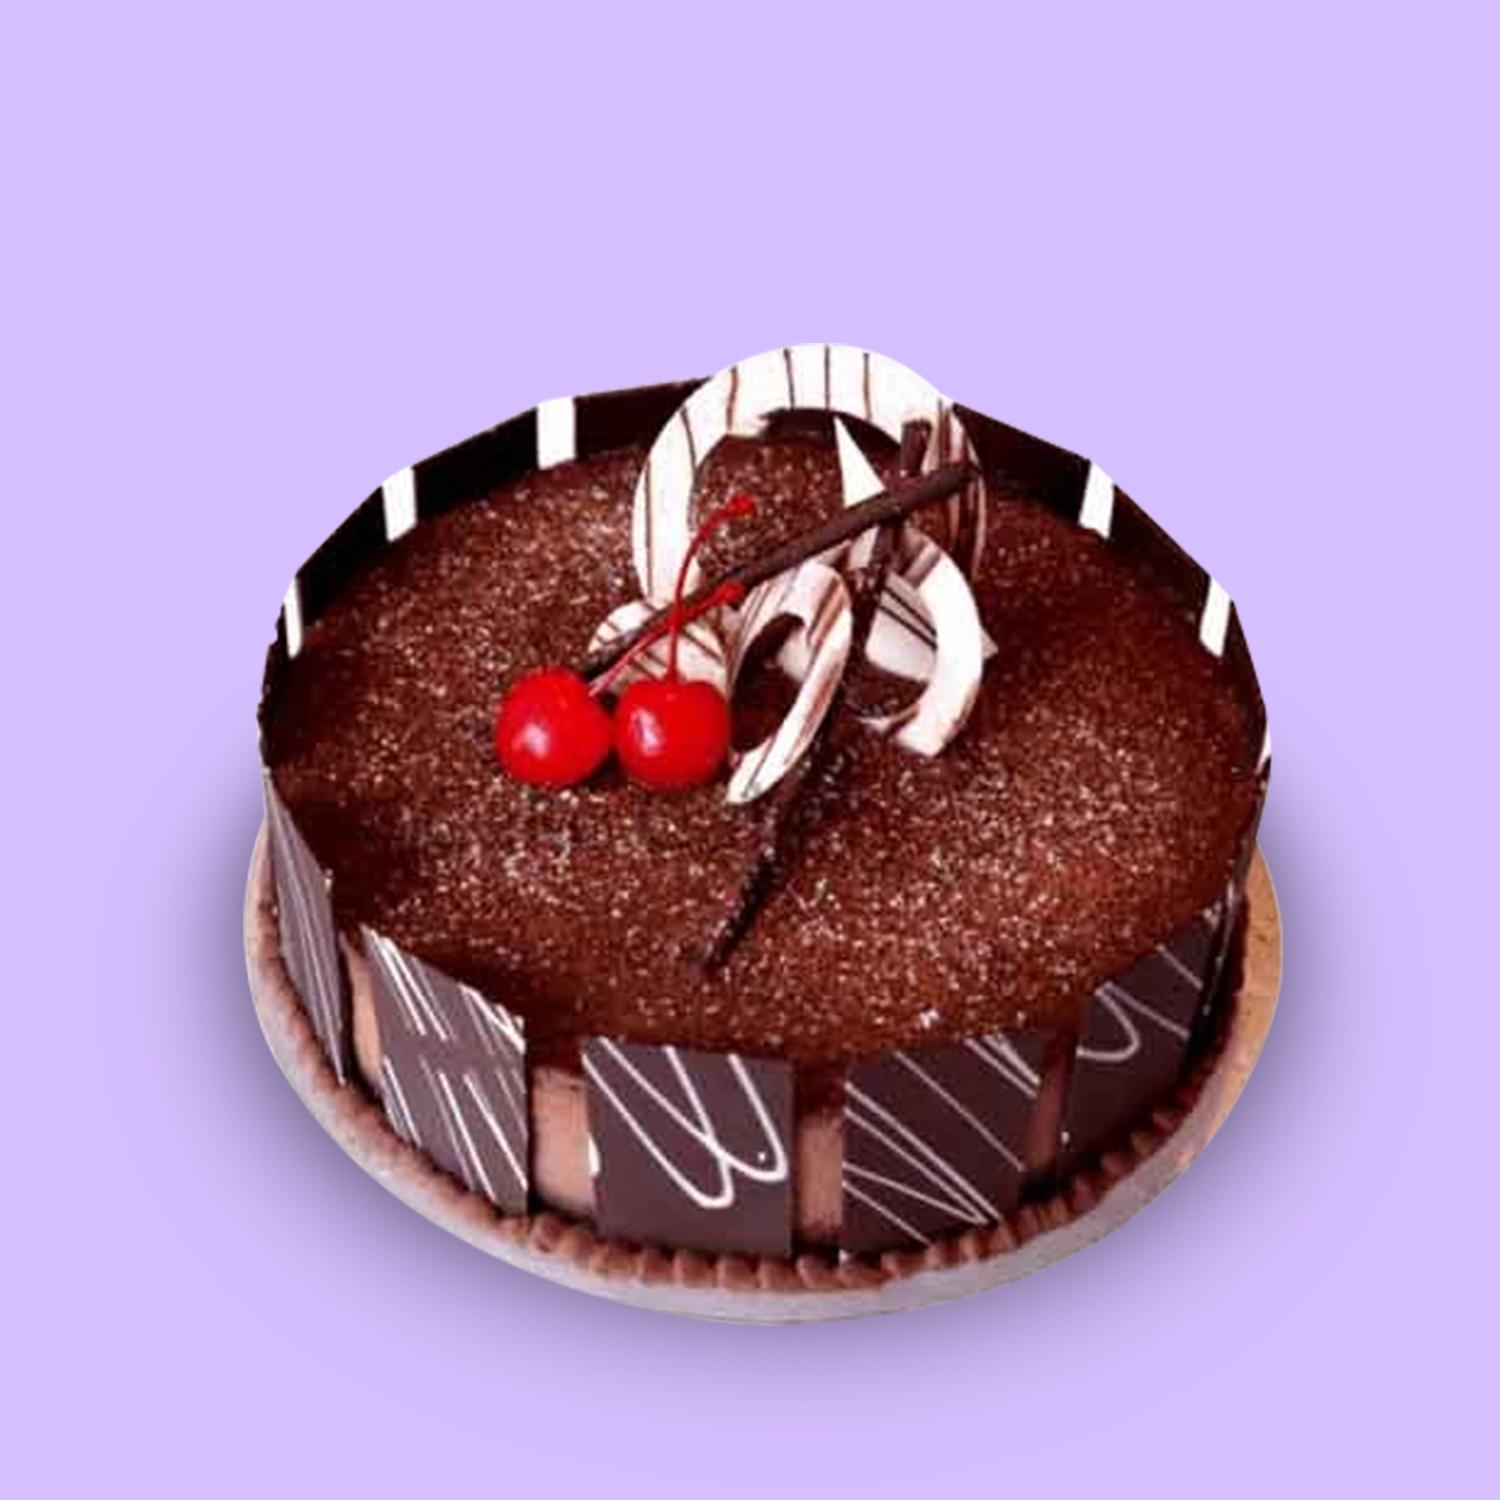 PINK NAUGHTY BOOB BASQUE/CORSET CAKE | Creative Cakes by Kaz